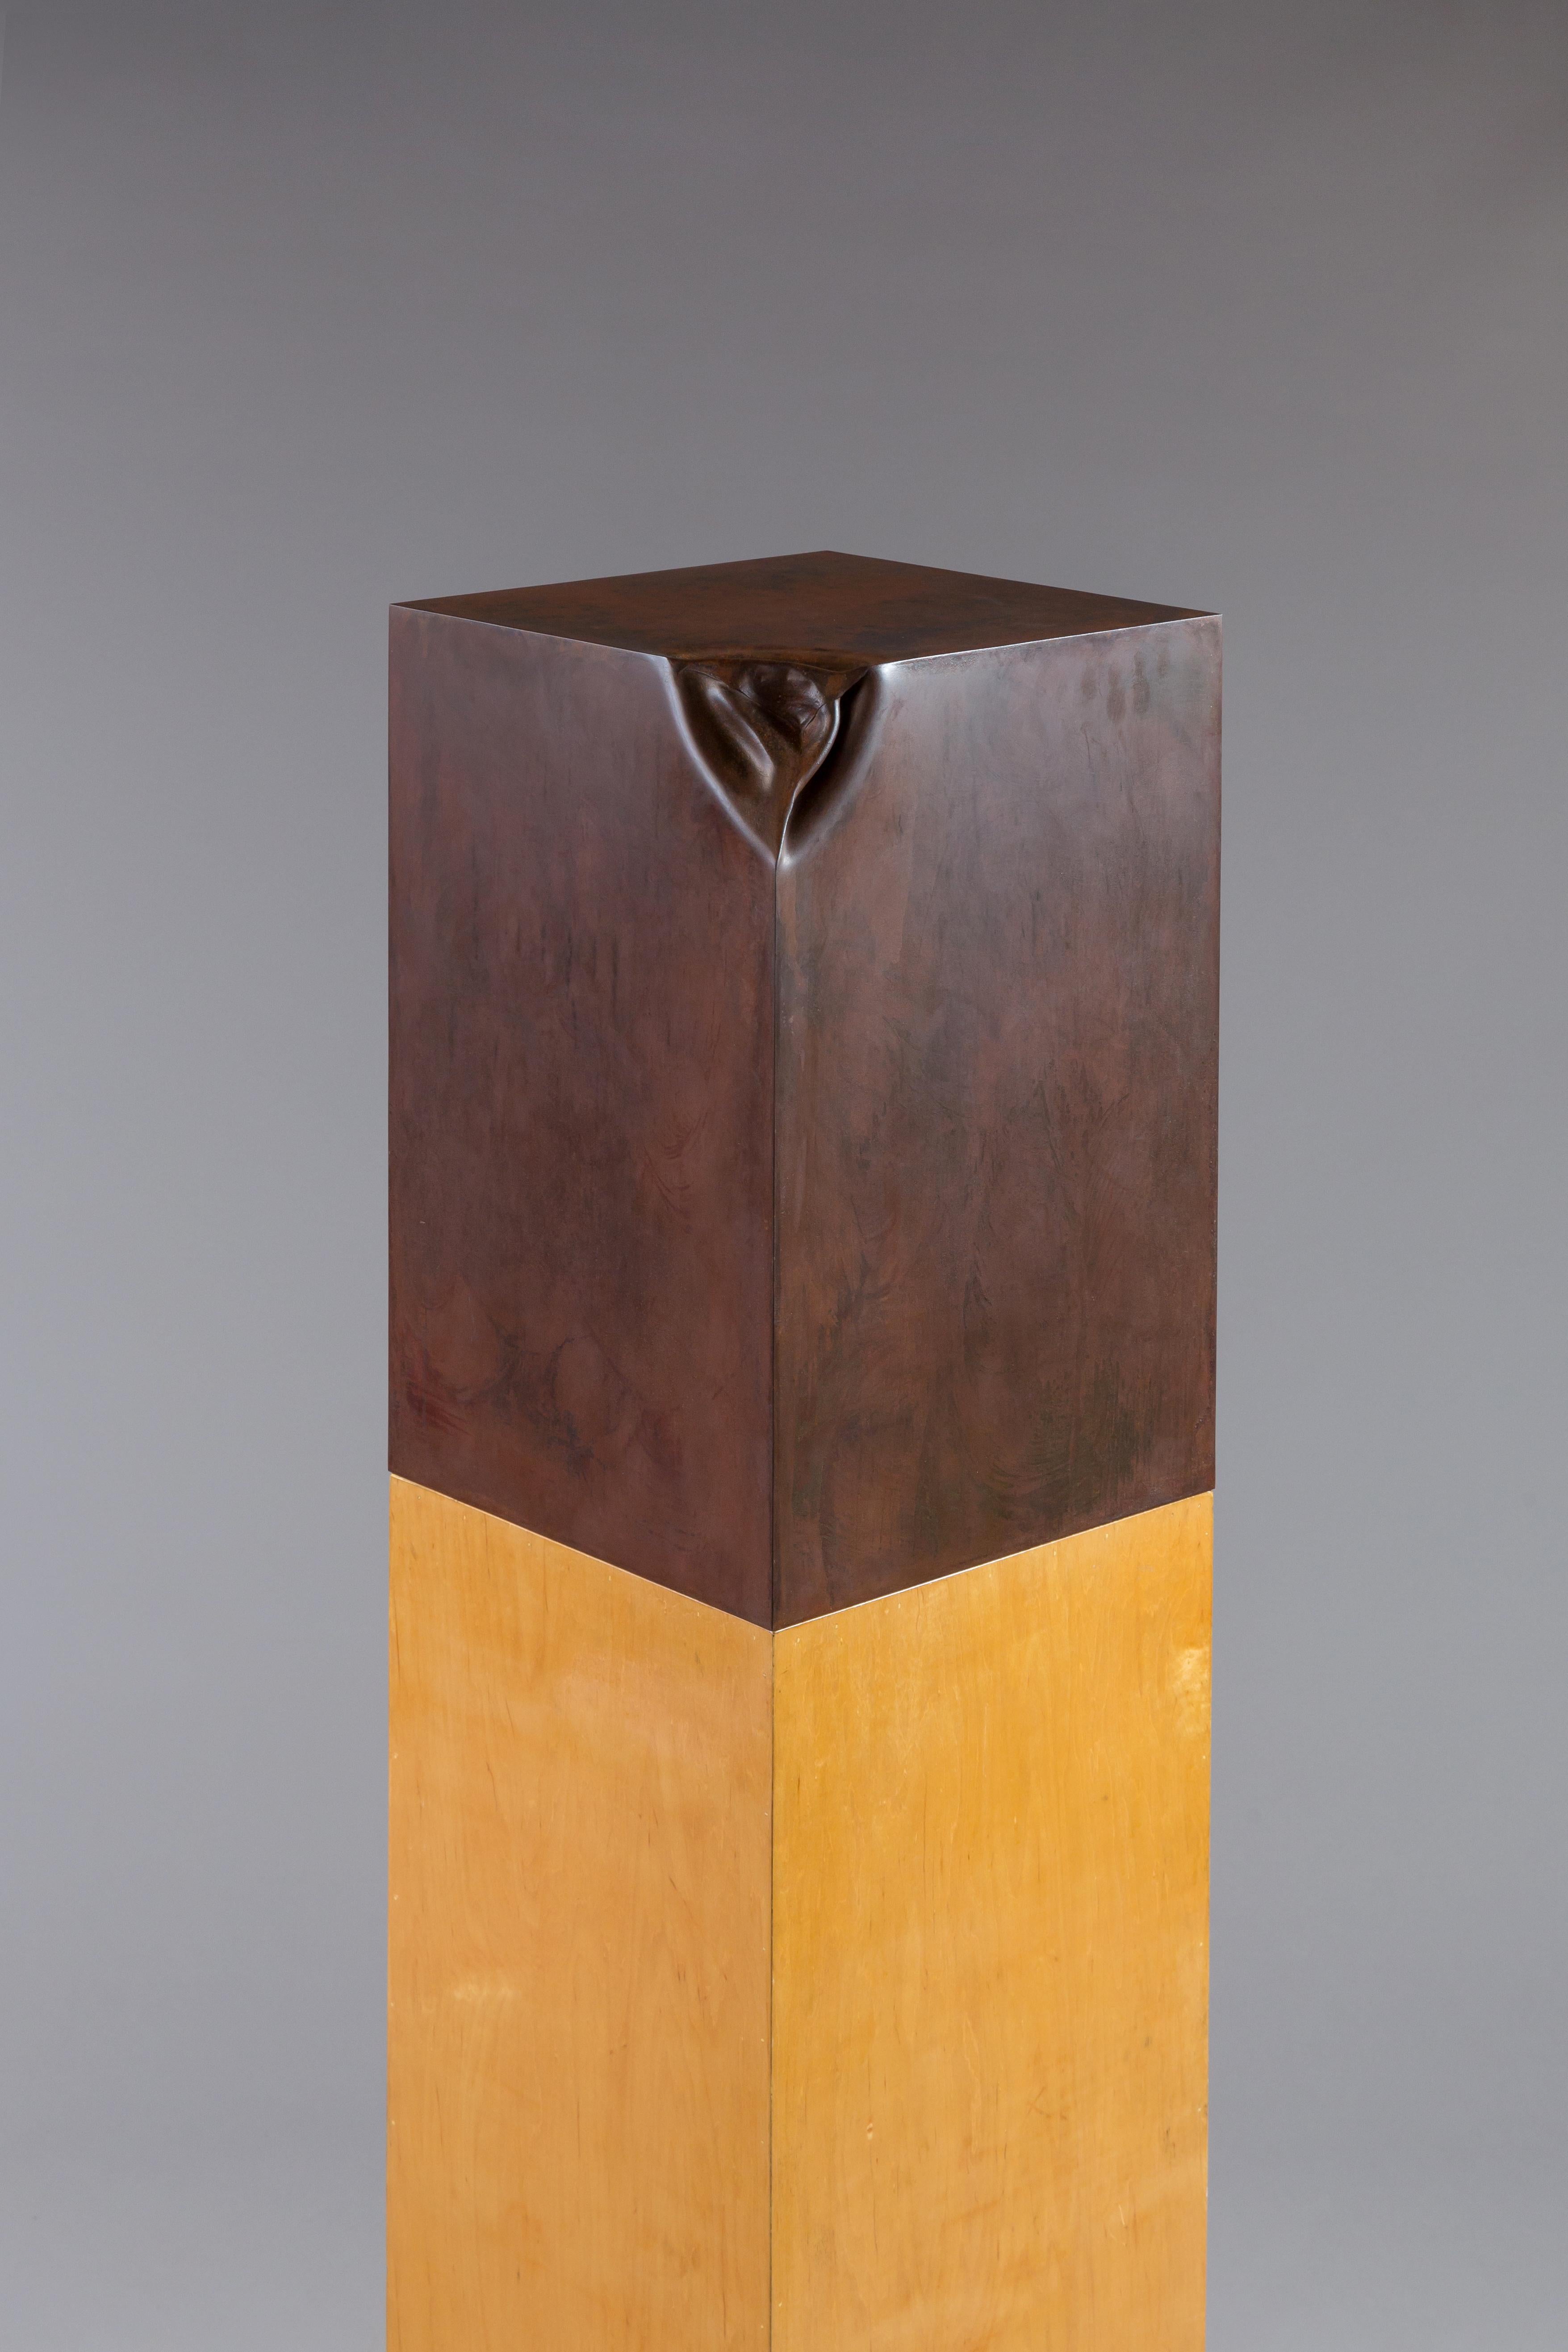 Un cube en acier soudé sur un support en bois complète cette sculpture unique en son genre.
Patine rouillée antique avec finition en couche transparente
Support sur pied en bois laqué.
    